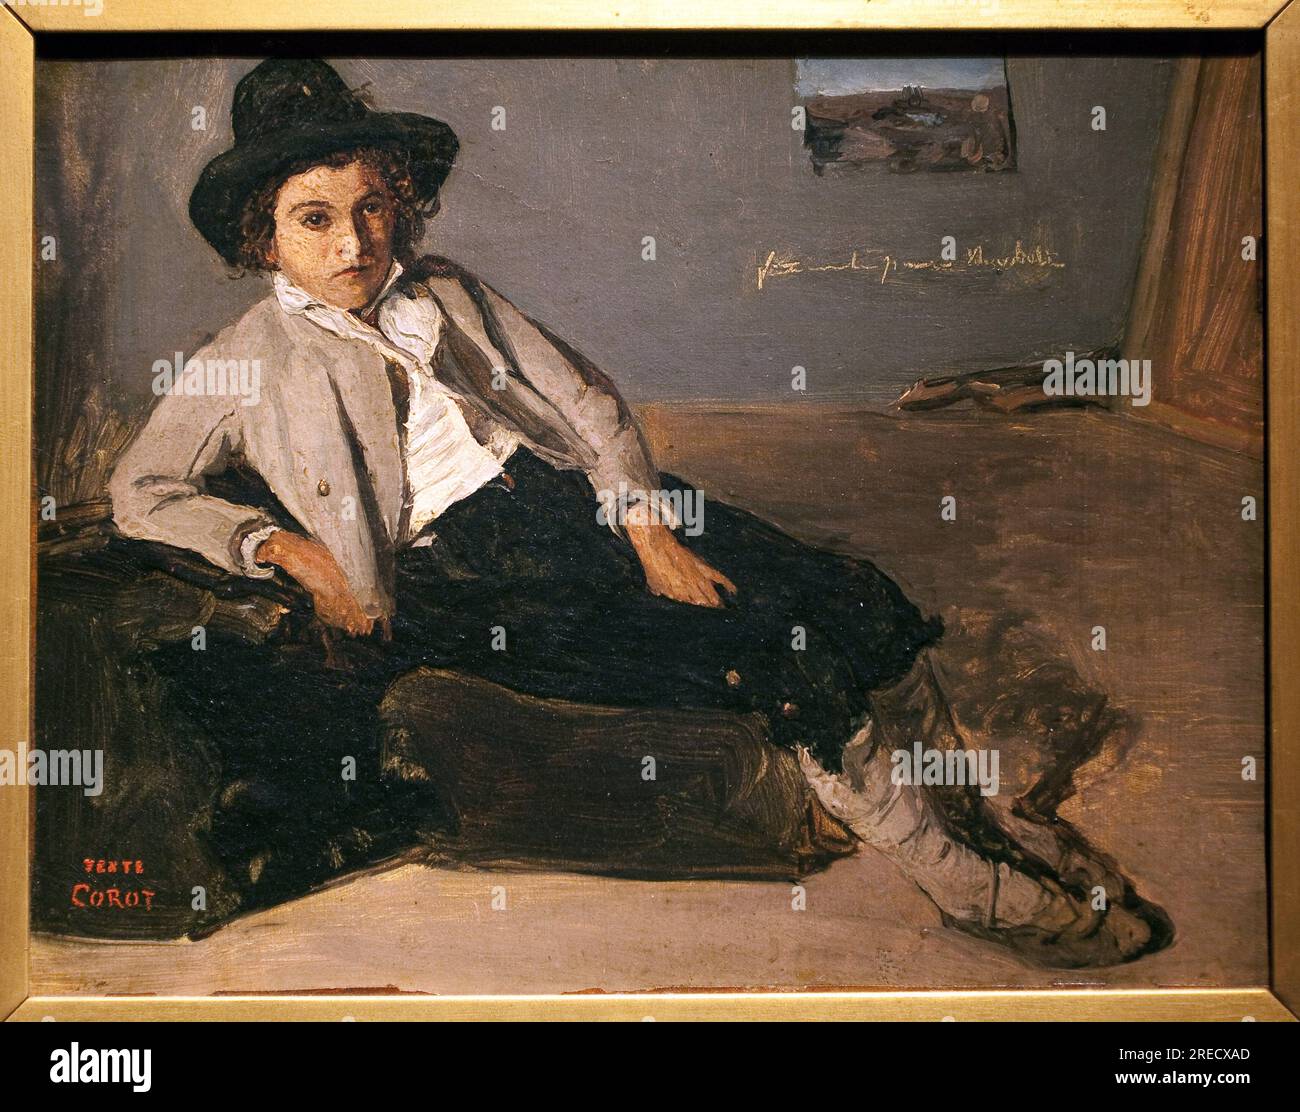 Jeune italien assis. Peinture de Jean Baptiste Camille Corot (1796-1875), huile sur papier marouflee sur toile, vers 1825-1827. Museo delle Belle Arti di Reims. Foto Stock